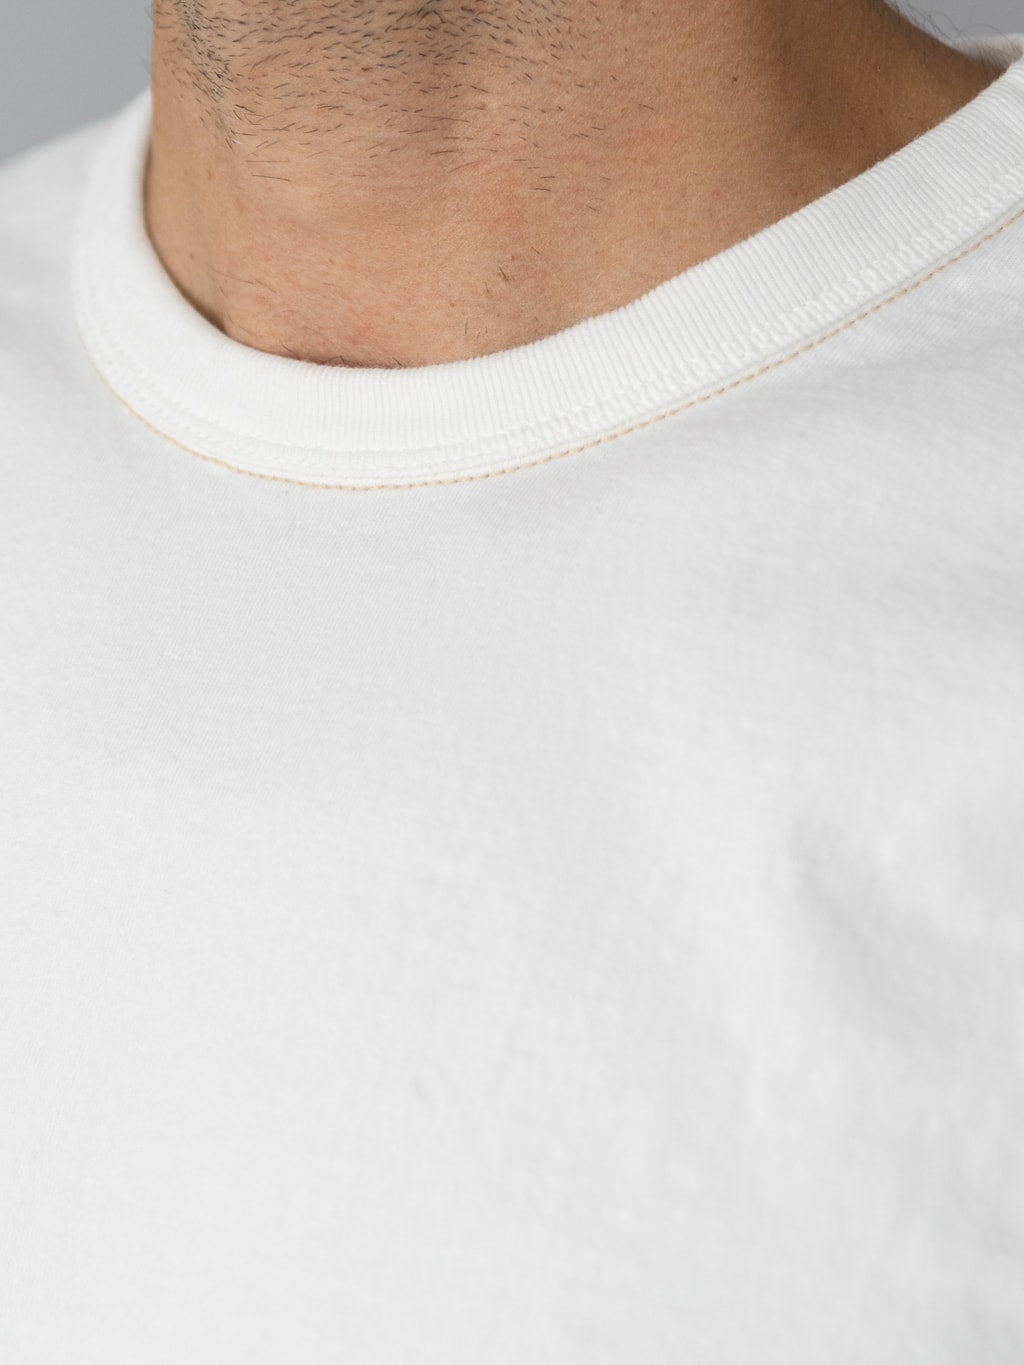 The Flat Head Plain Heavyweight TShirt white collar